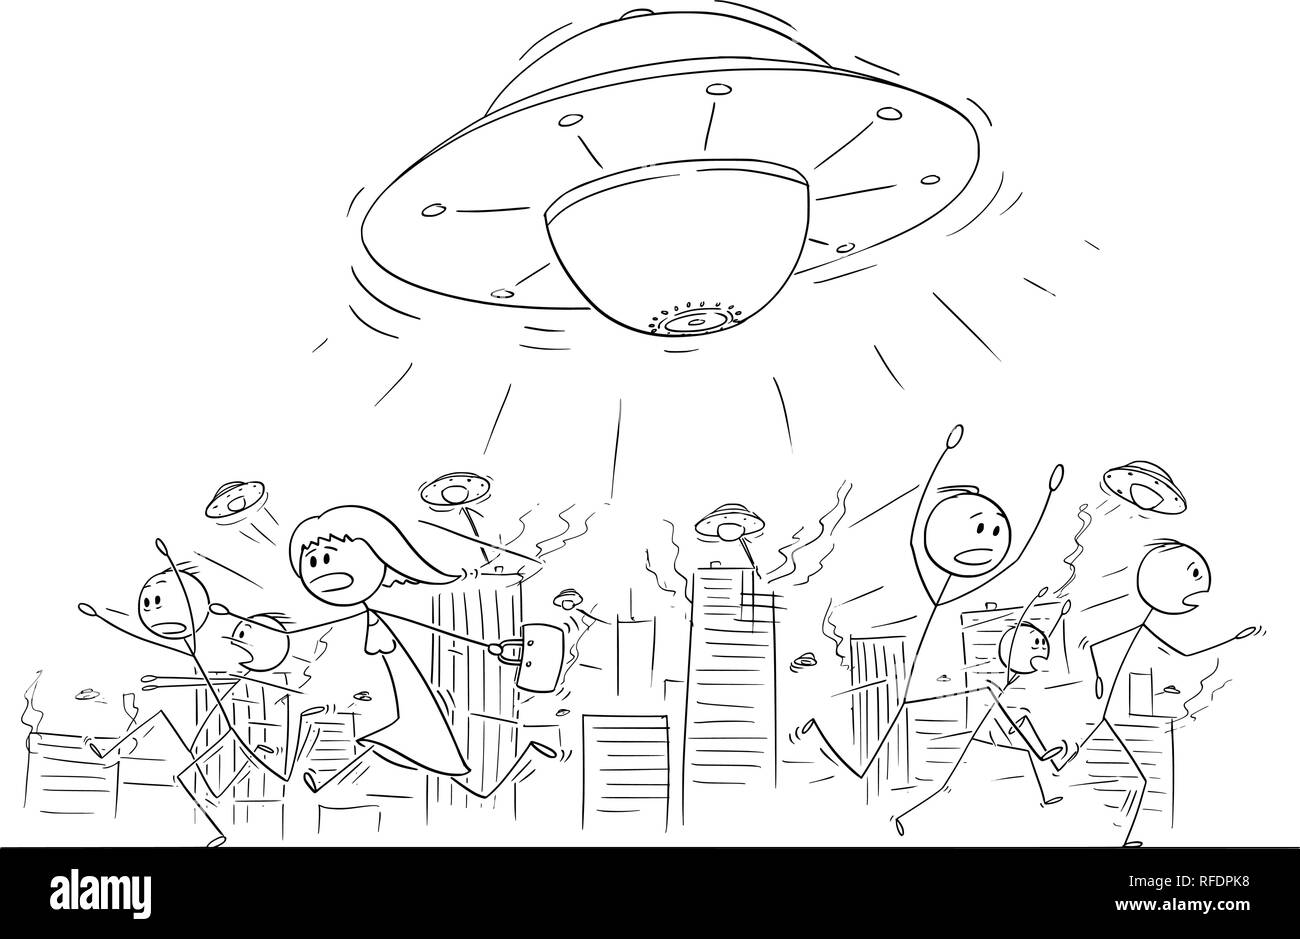 Cartoon Zeichnung der Masse von Menschen in Panik Weg von UFO oder fremden Schiffe angreifende Stadt läuft Stock Vektor